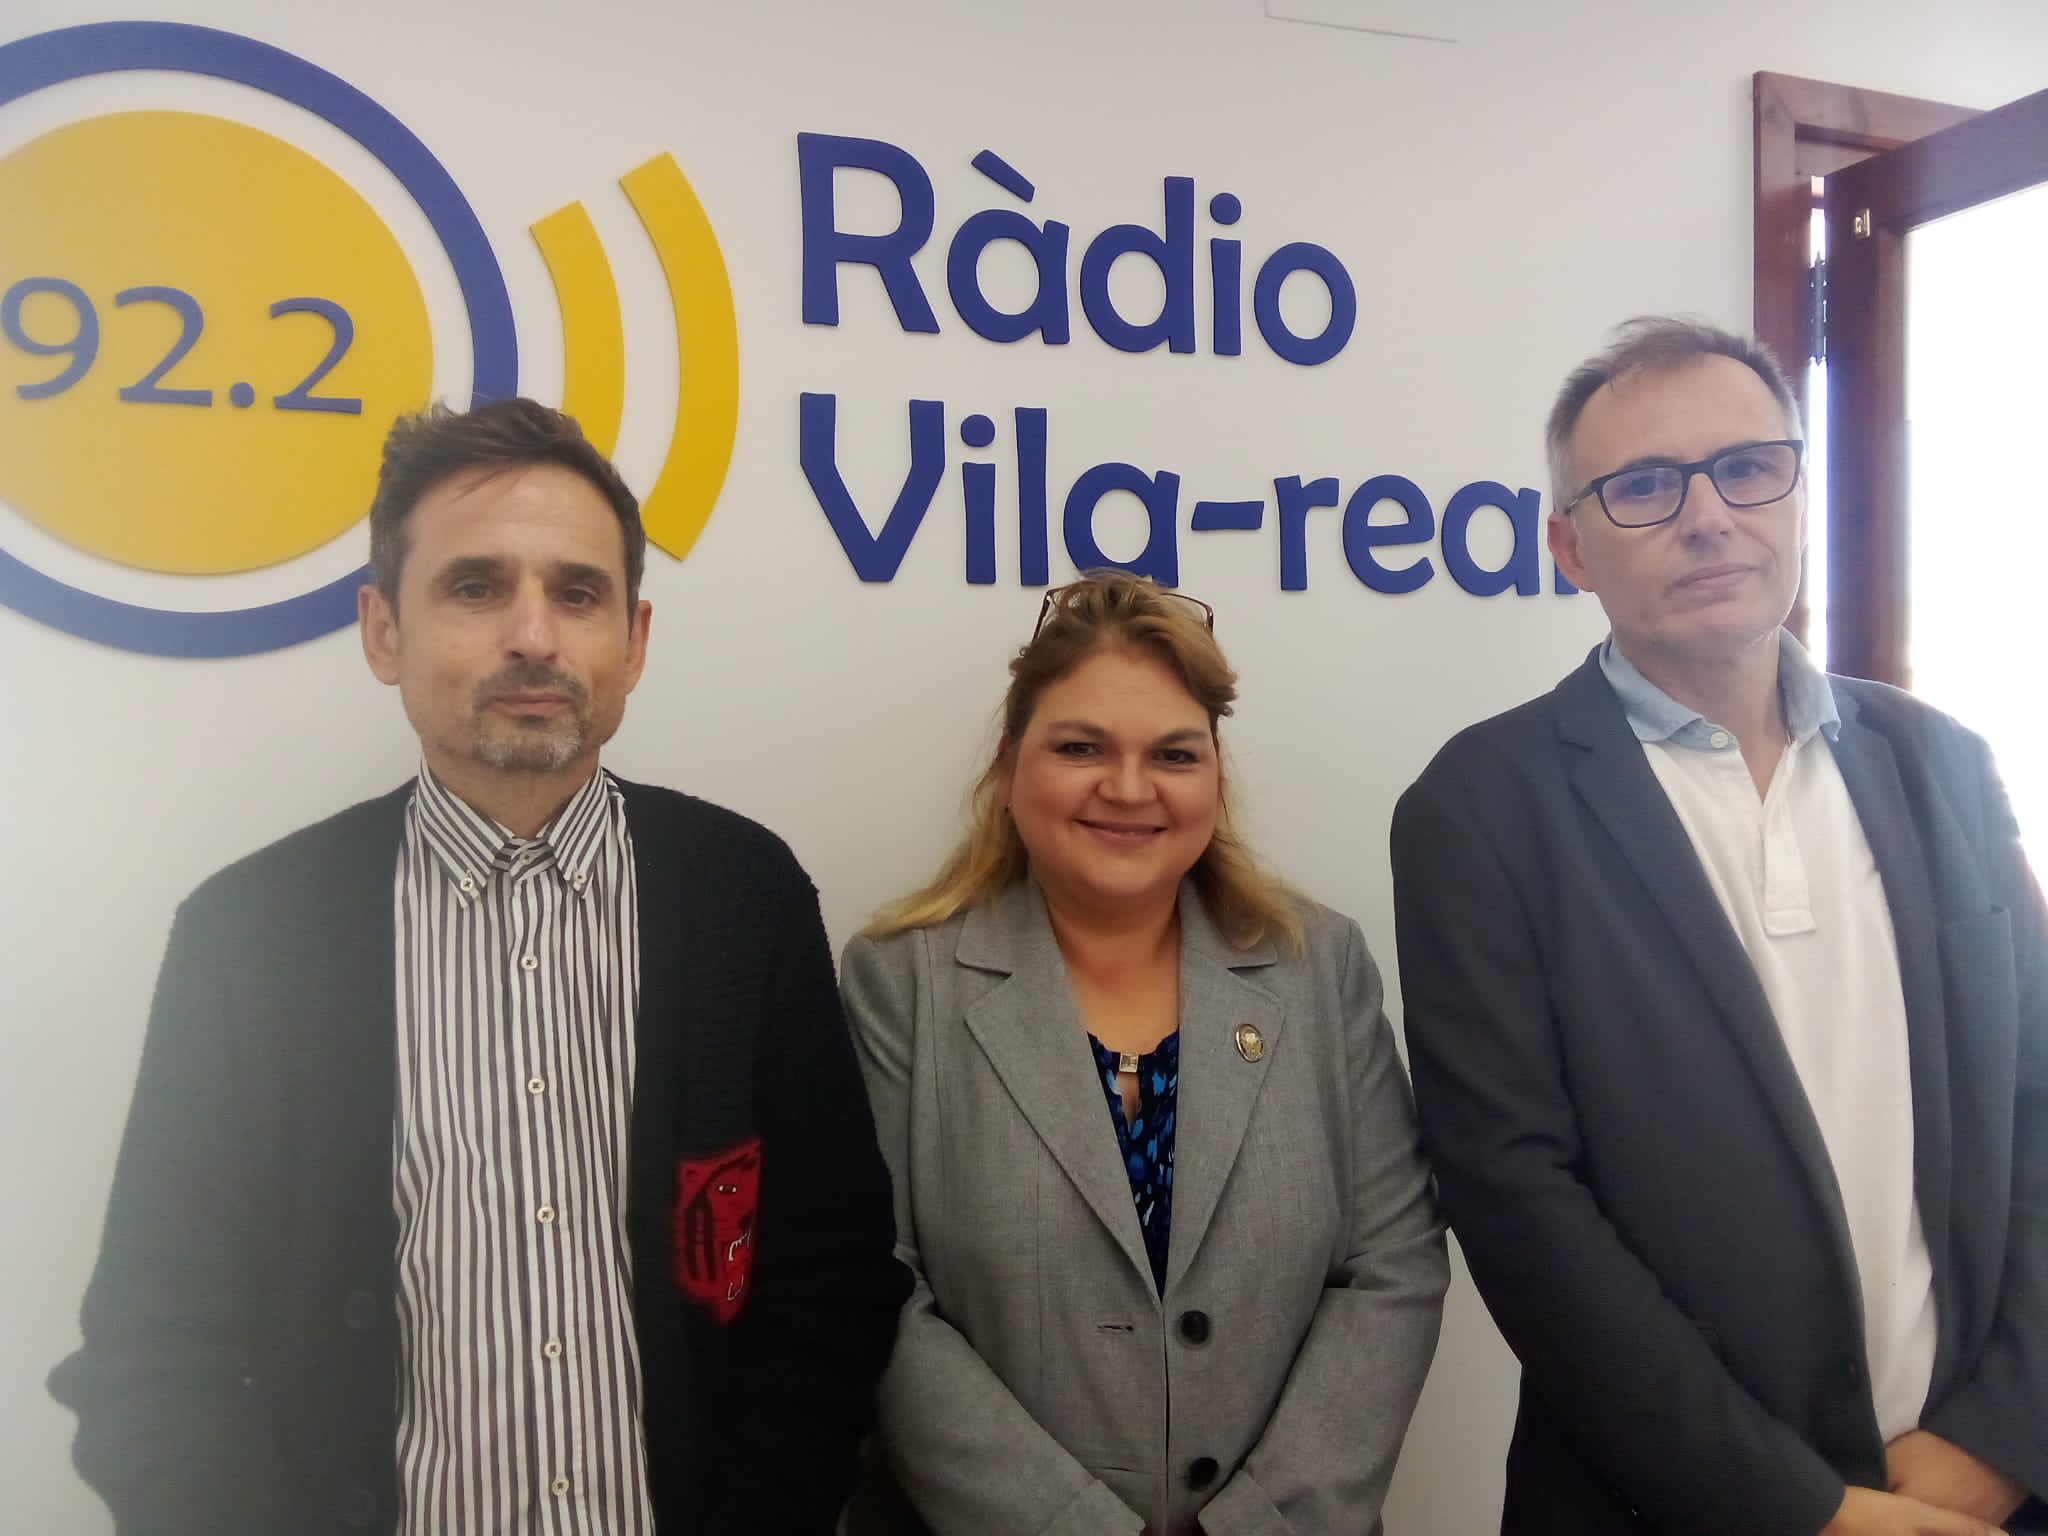 Vila-real reuneix experts internacionals en drets de la infància en  un congrés en col·laboració amb la UPV, parlem amb Rosaria Correa, Vicente Cabedo i Toni Marin